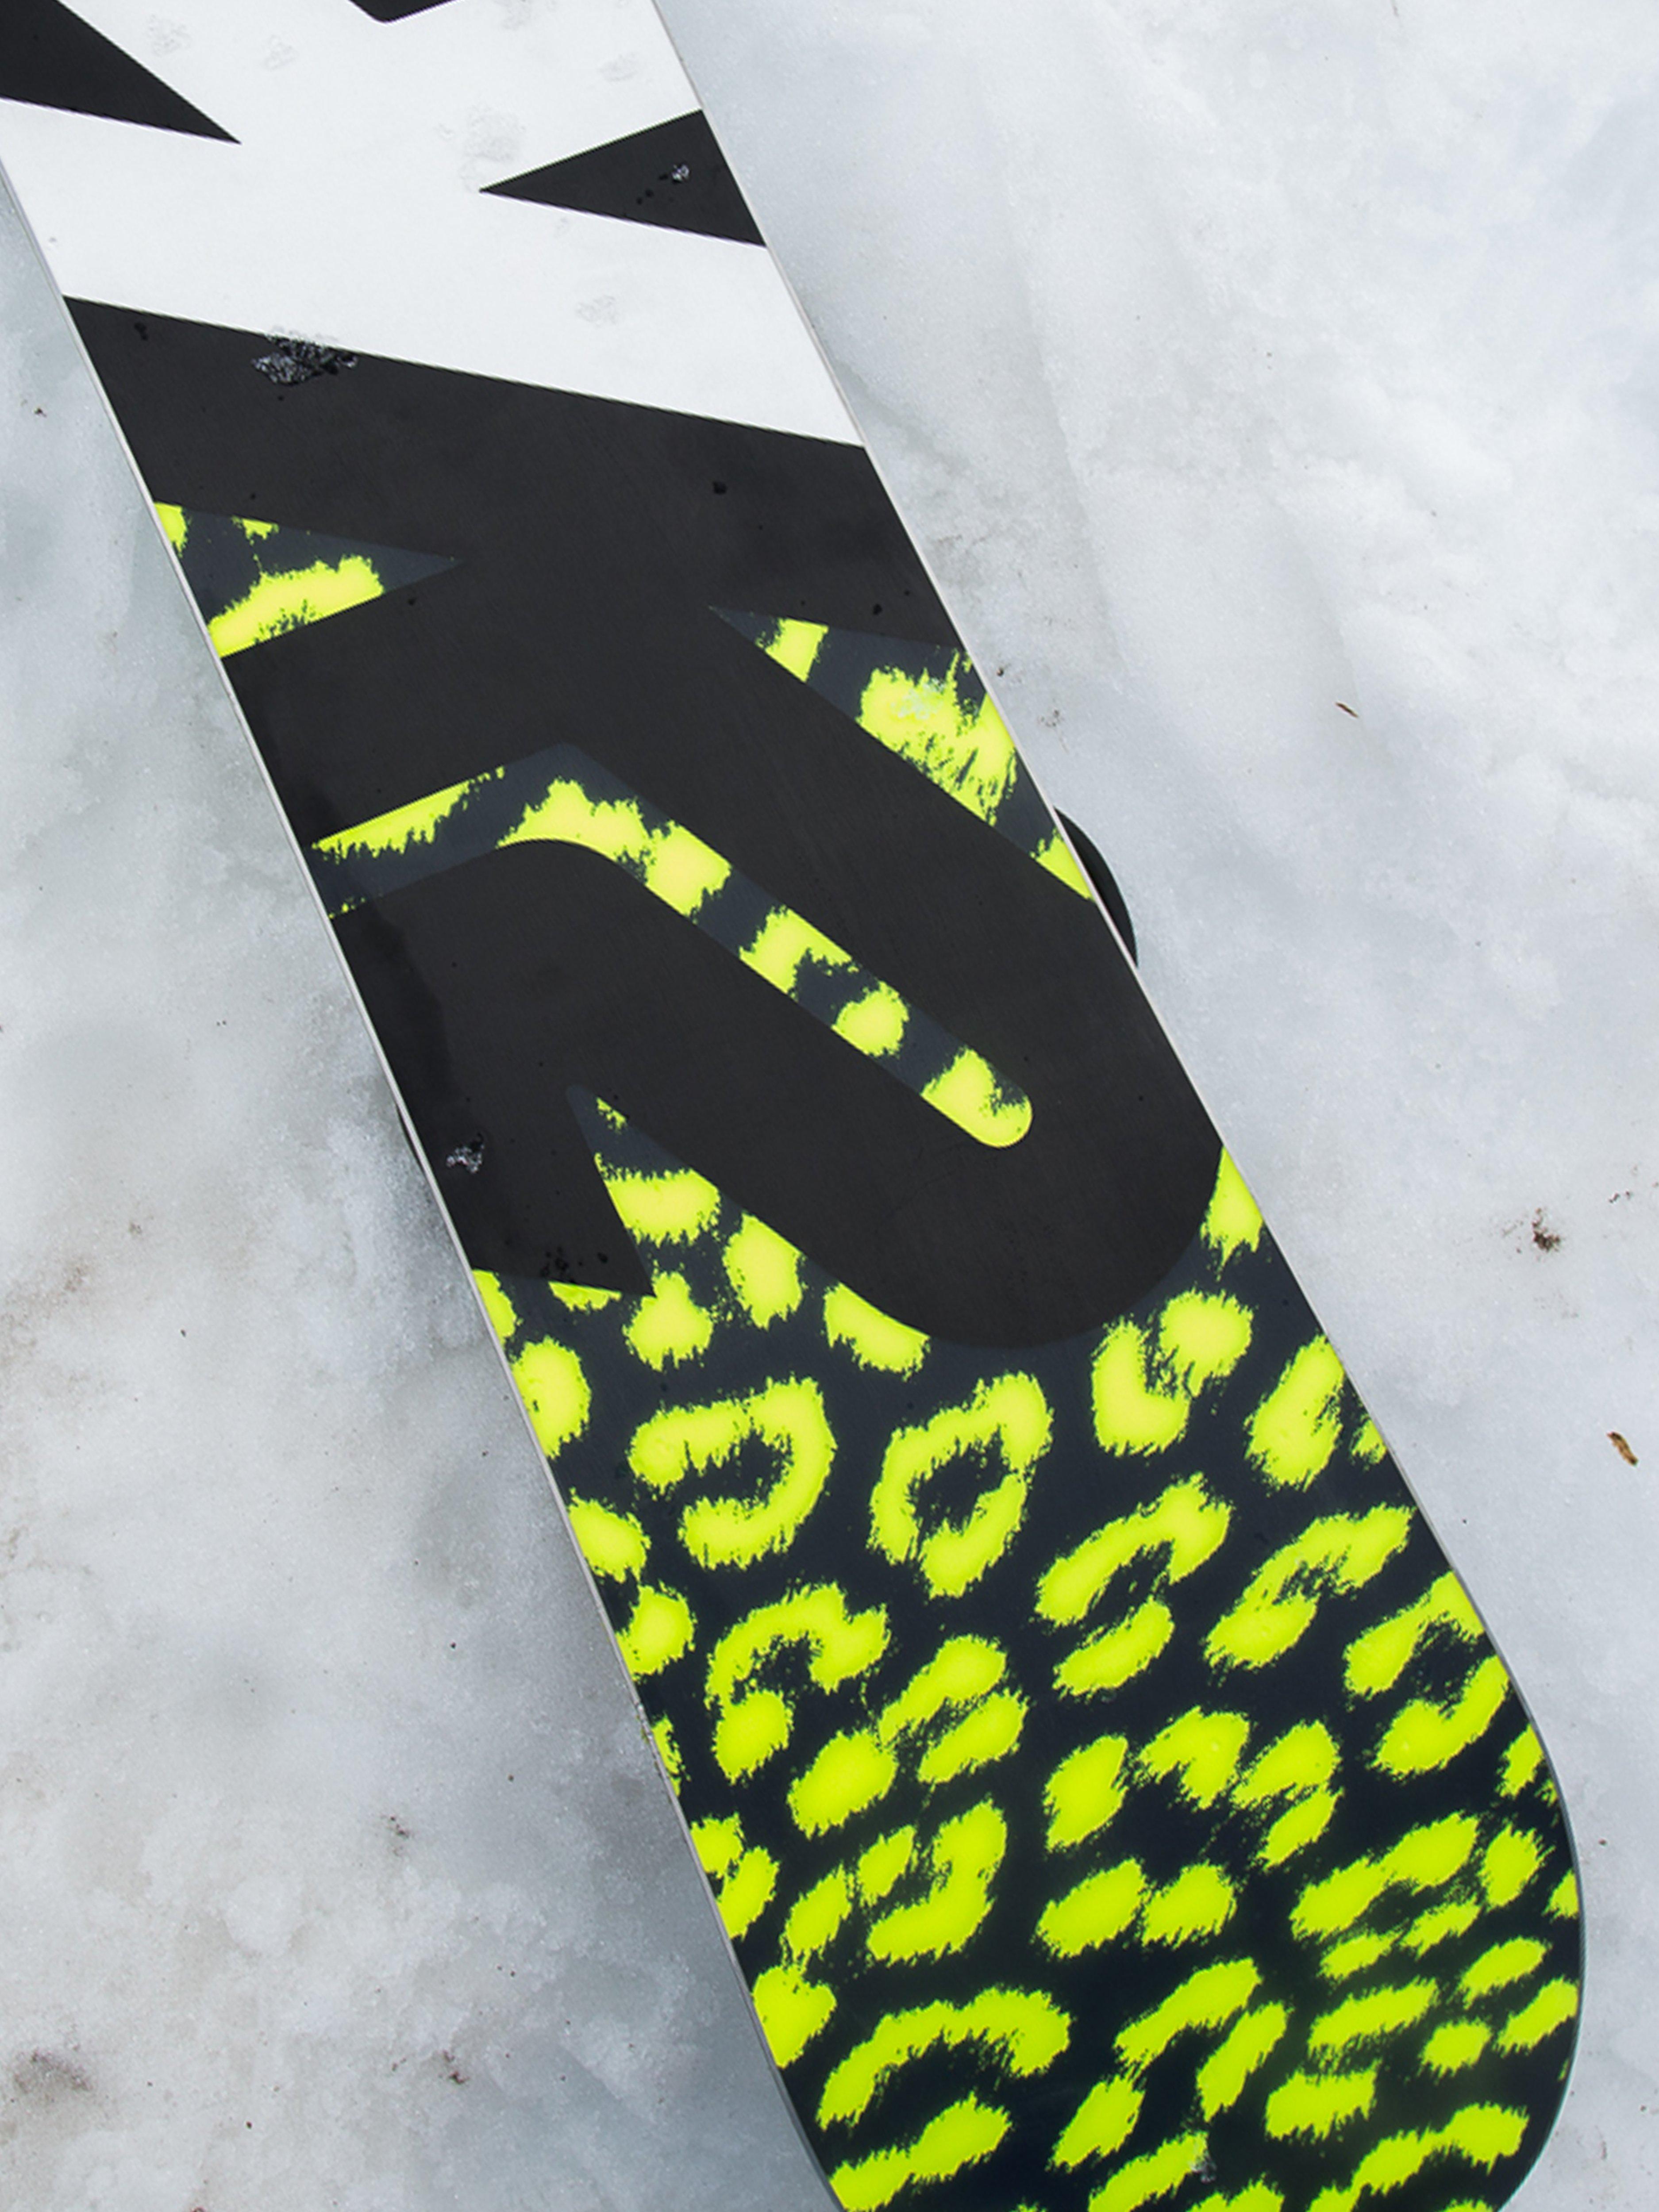 K2 Damen Freestyle Snowboard First Lite 146 2014 